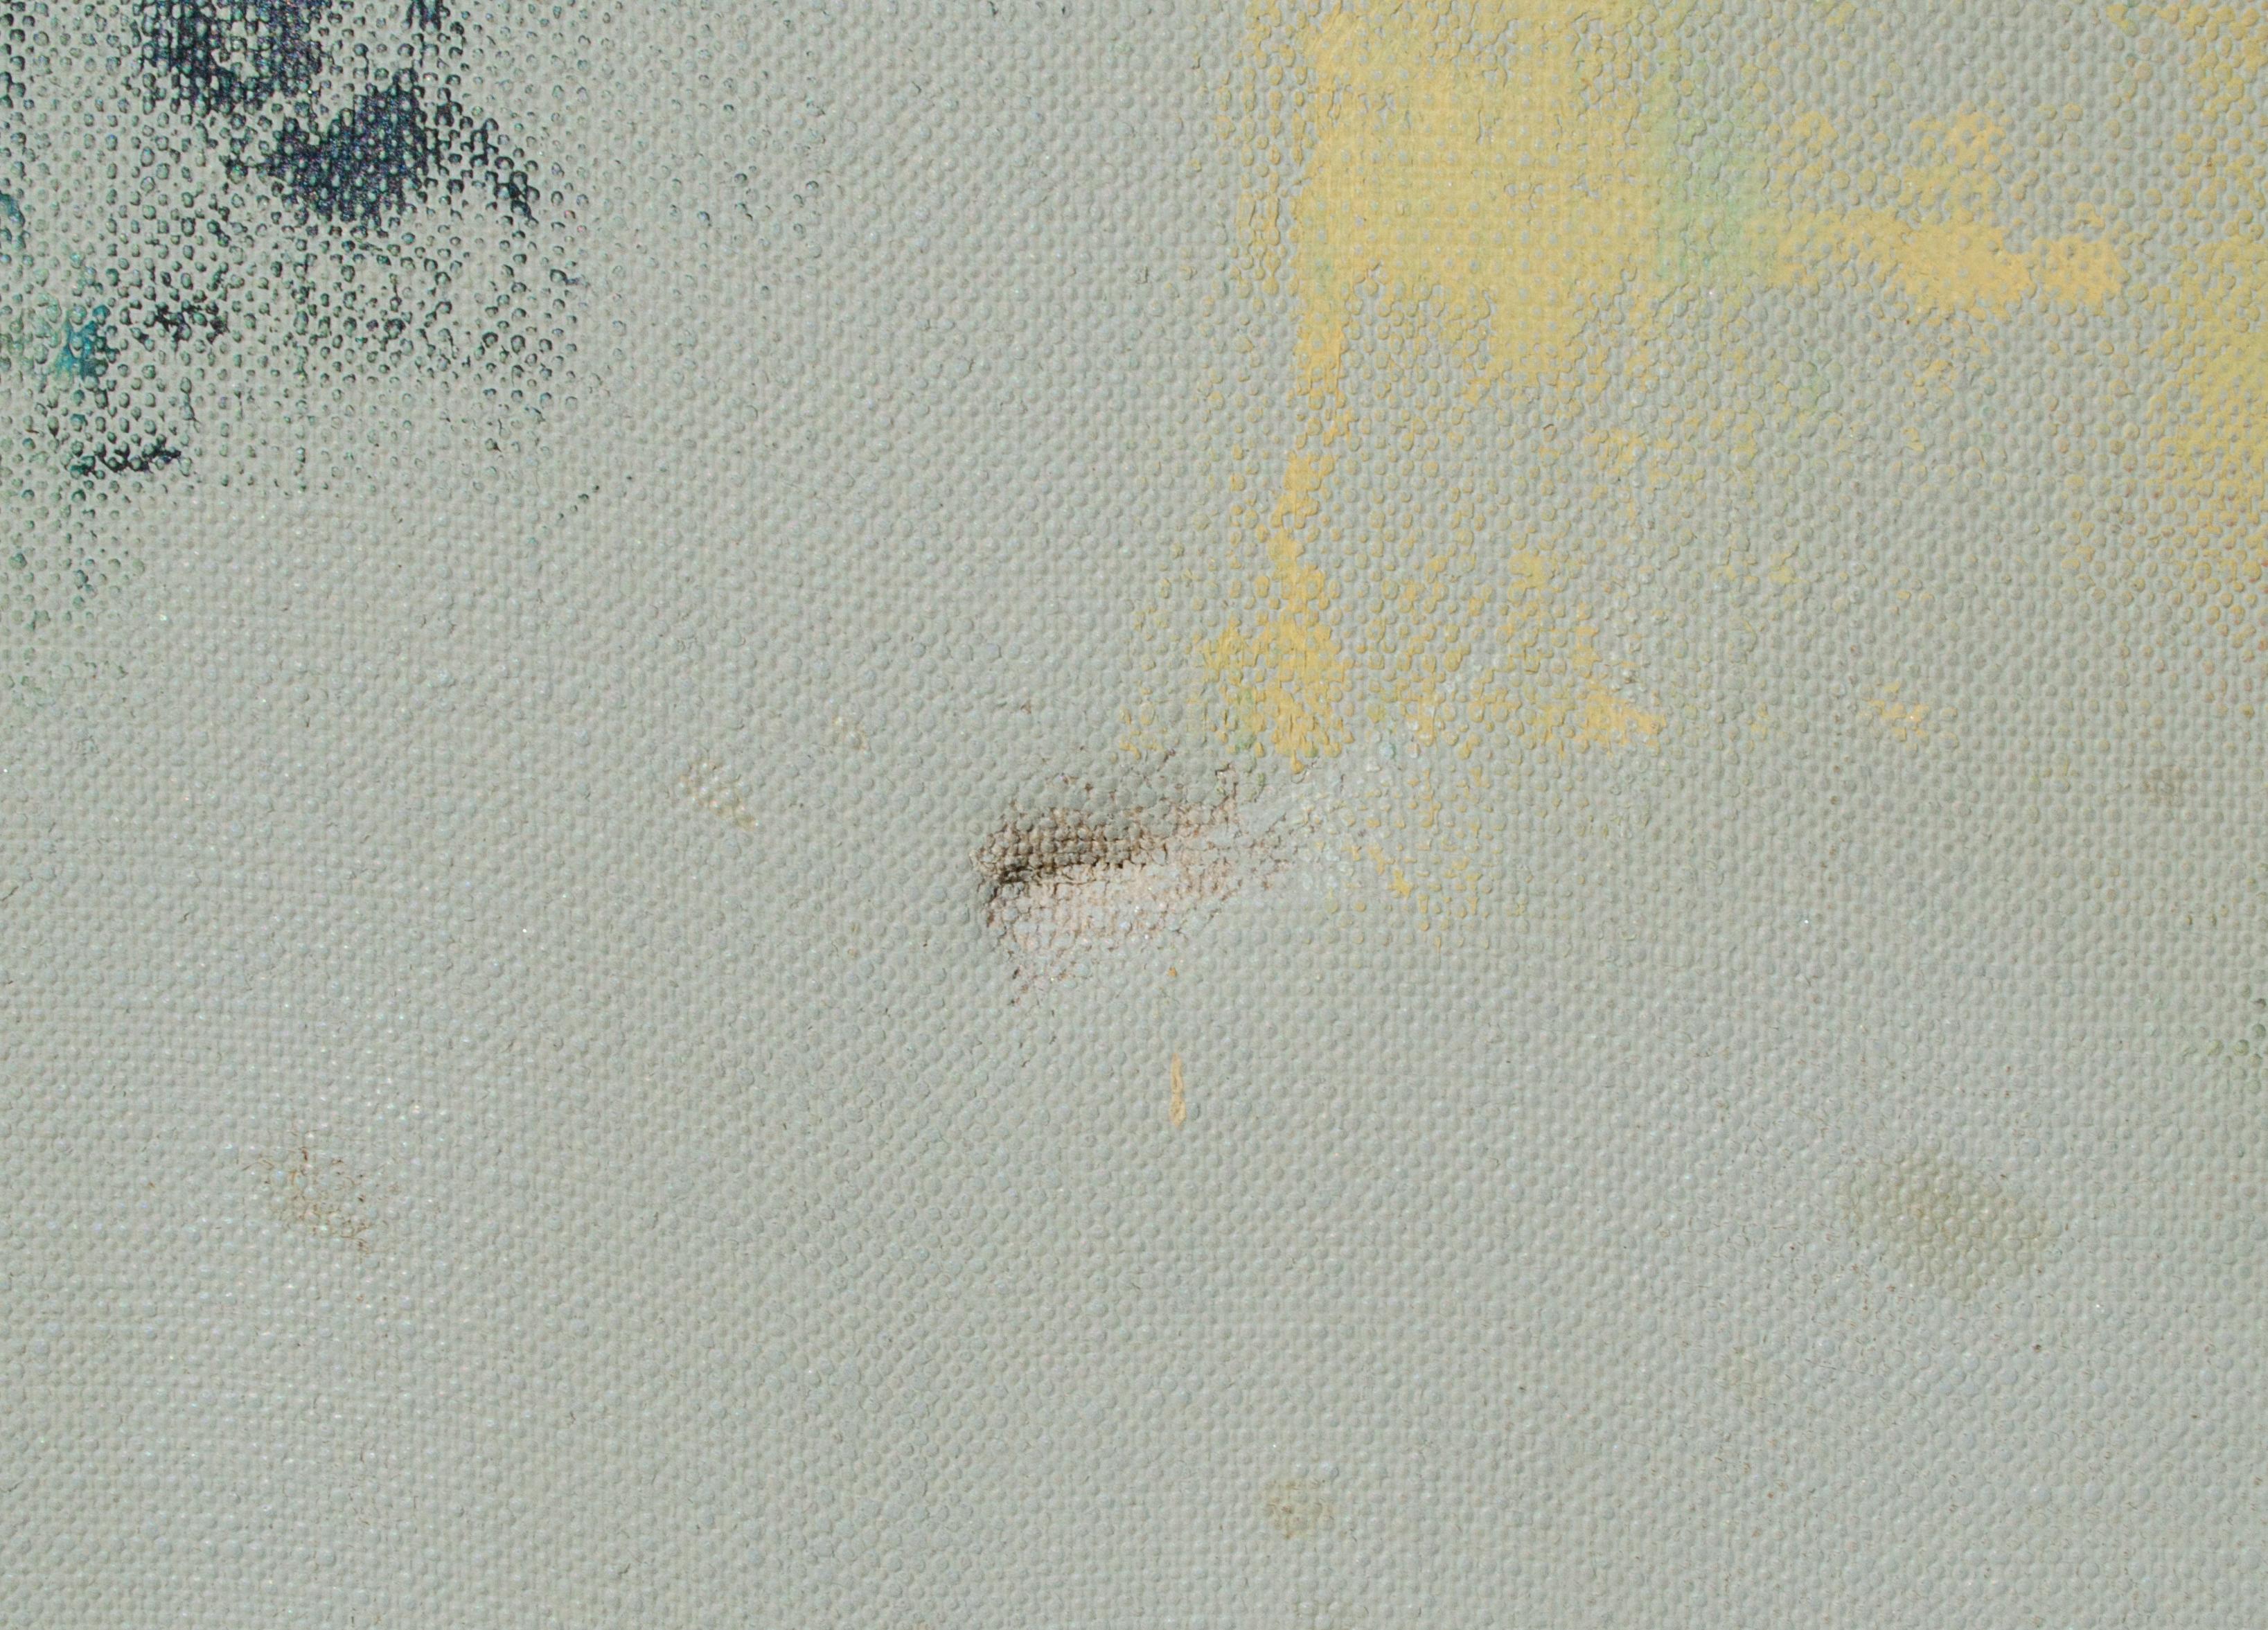 Geheimnisvoller amerikanischer Künstler
Ohne Titel, c. Anfang des 20. Jahrhunderts
Öl auf Leinwand
20 x 23 3/4 in.
Gerahmt: 25 3/4 x 29 3/4 x 1 3/8 Zoll.
Signiert unten rechts
Verso beschriftet: Dolitsky

